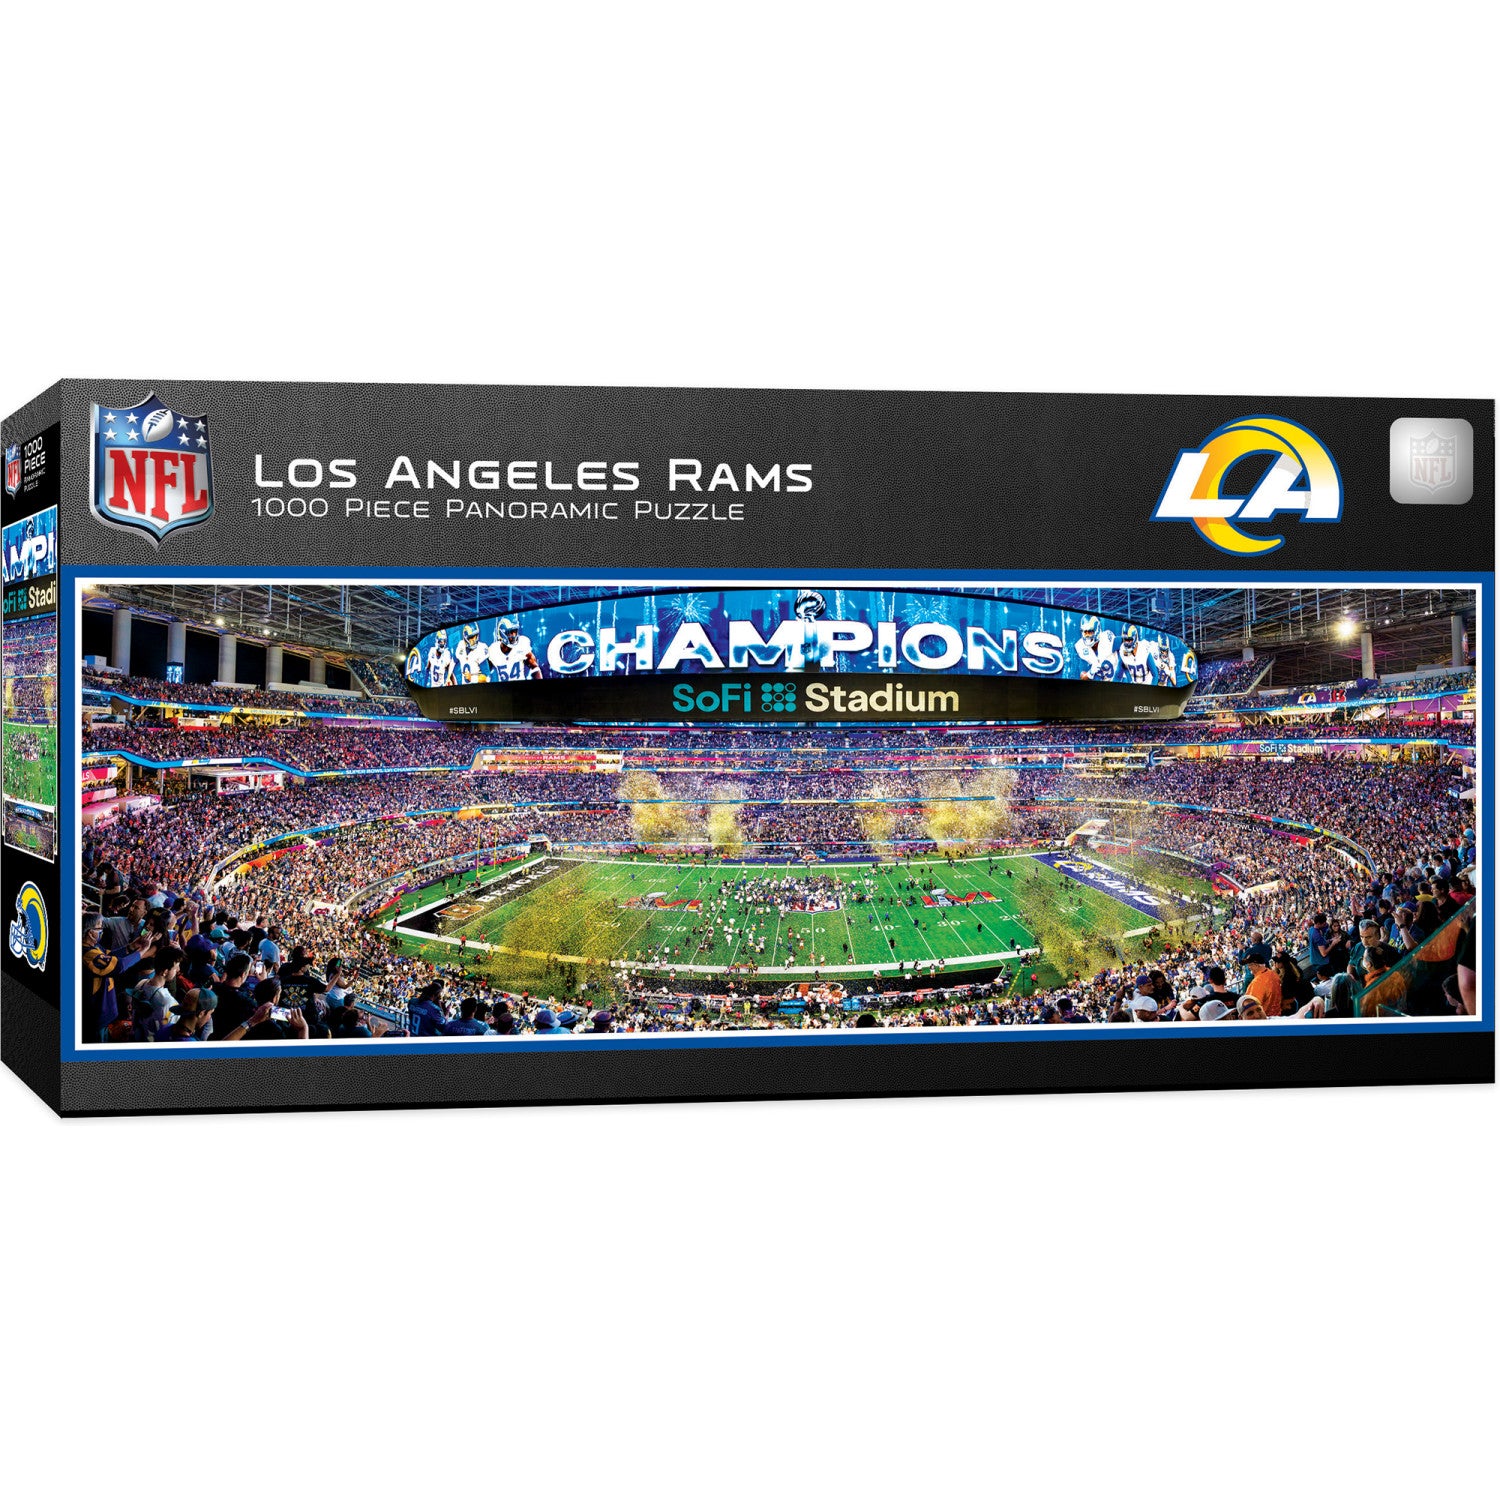 Los Angeles Rams - 1000 Piece Panoramic Jigsaw Puzzle